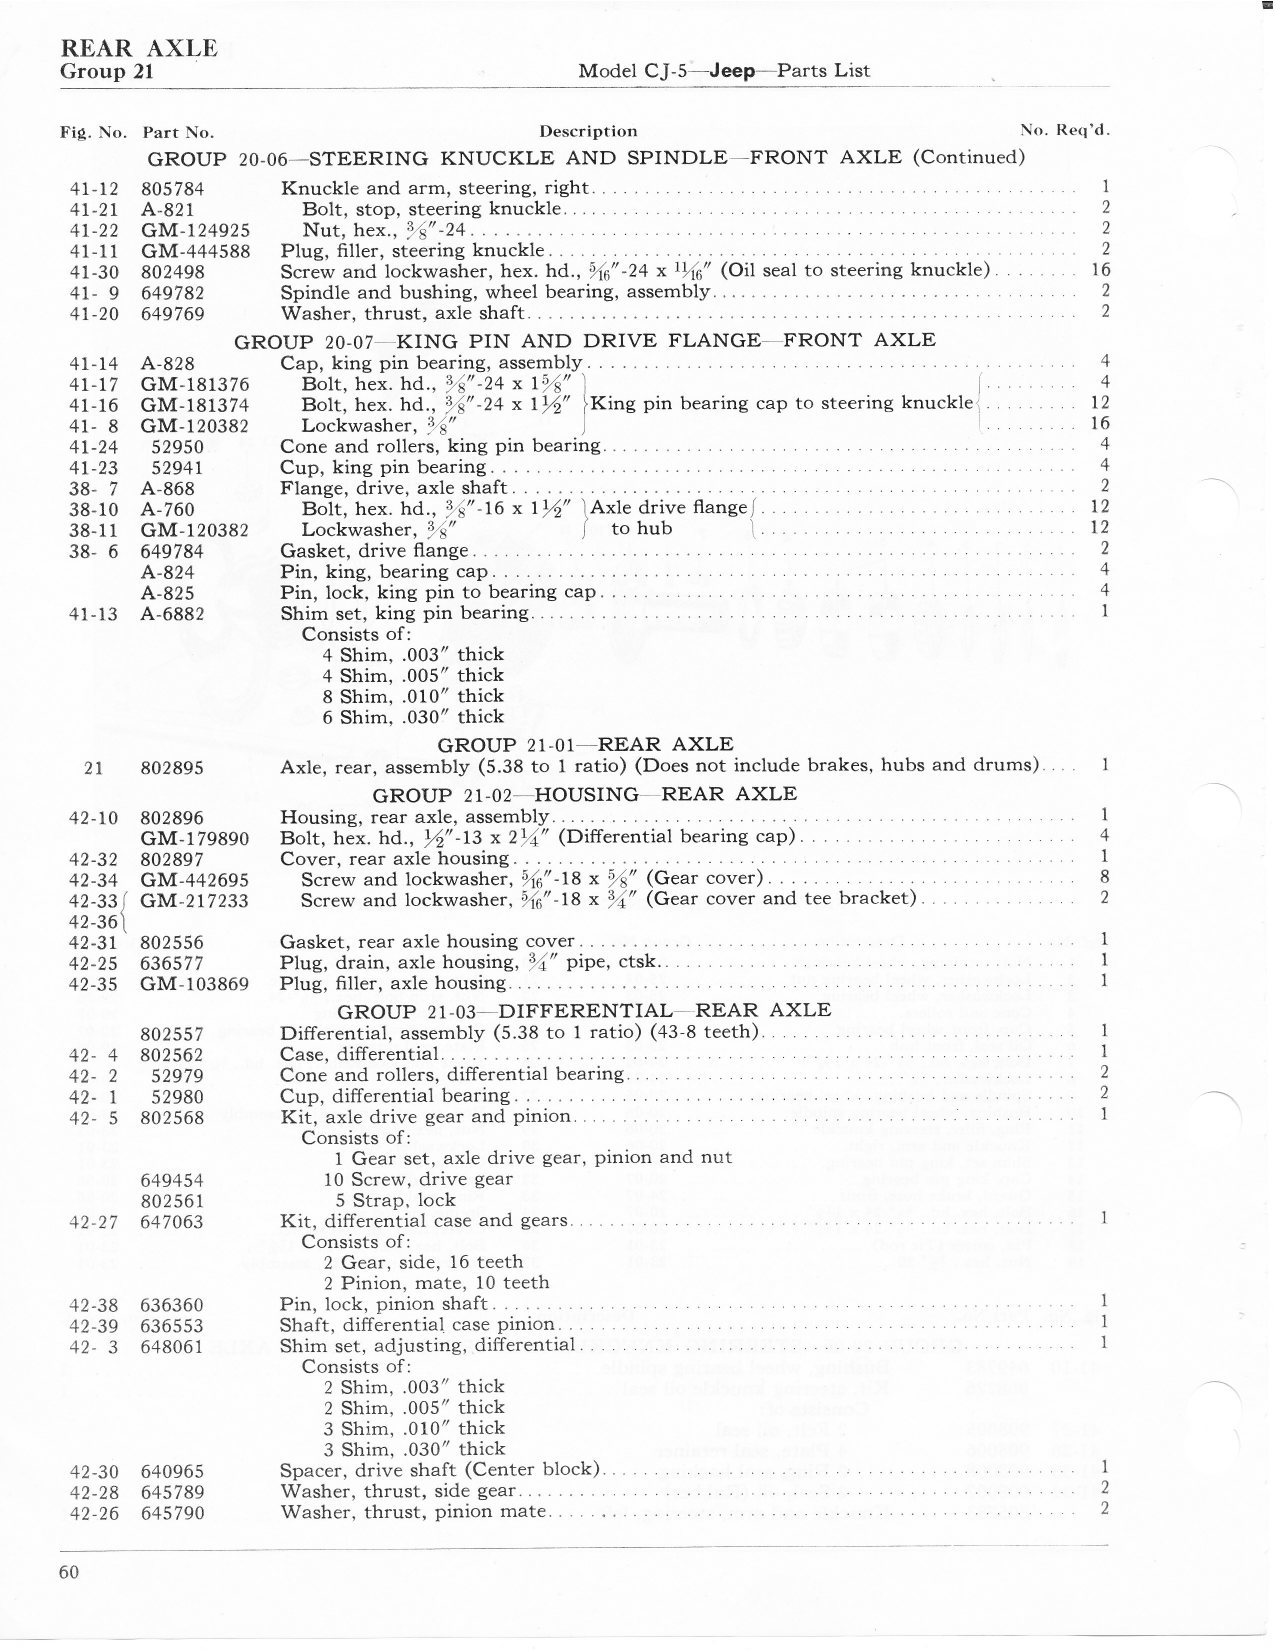 CJ-5 Parts List July 1955